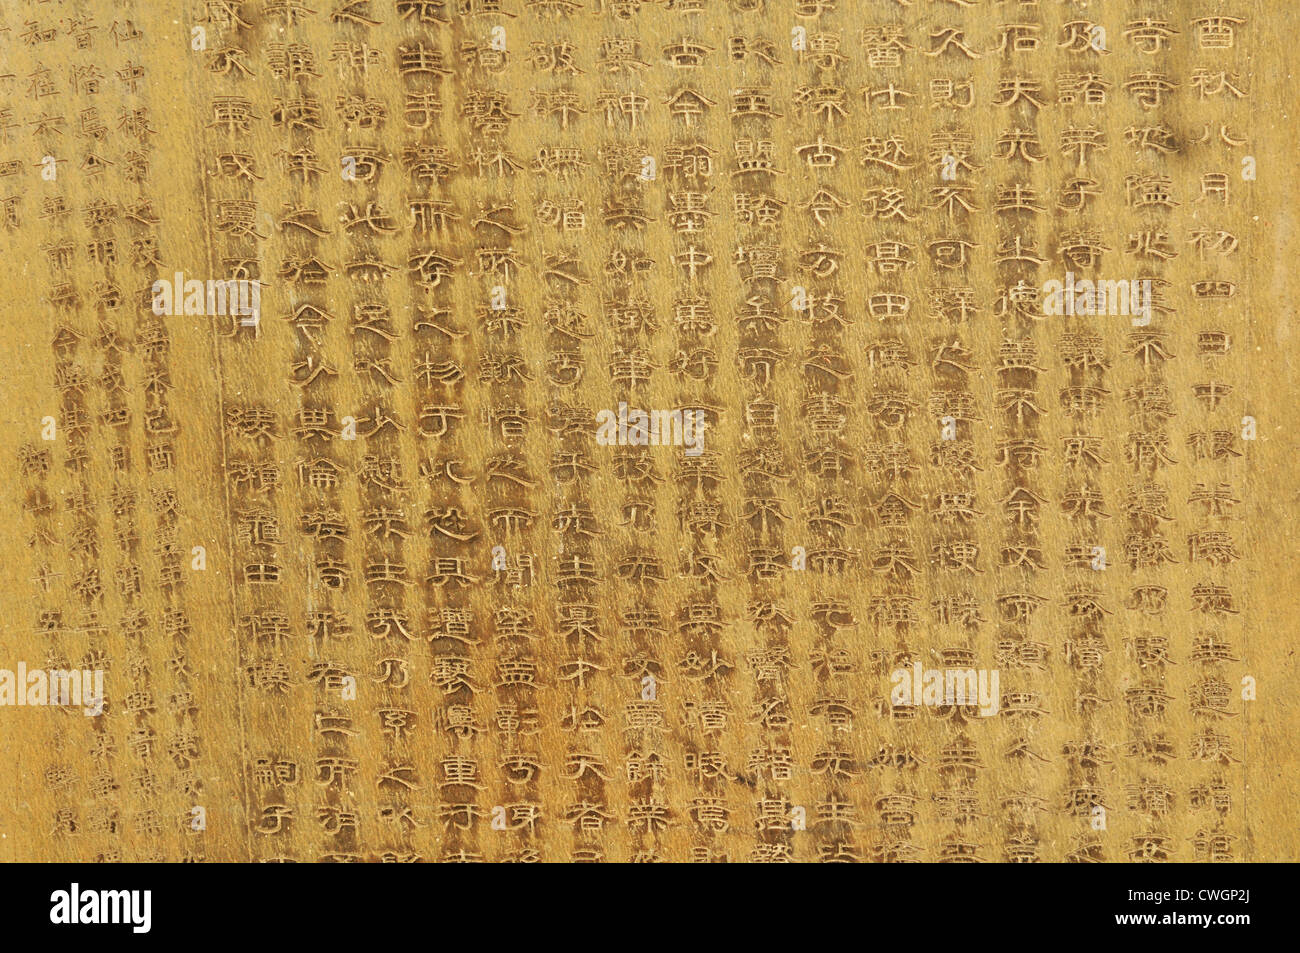 Calligraphie Japonaise vieille résumé sur la pierre ancienne Banque D'Images